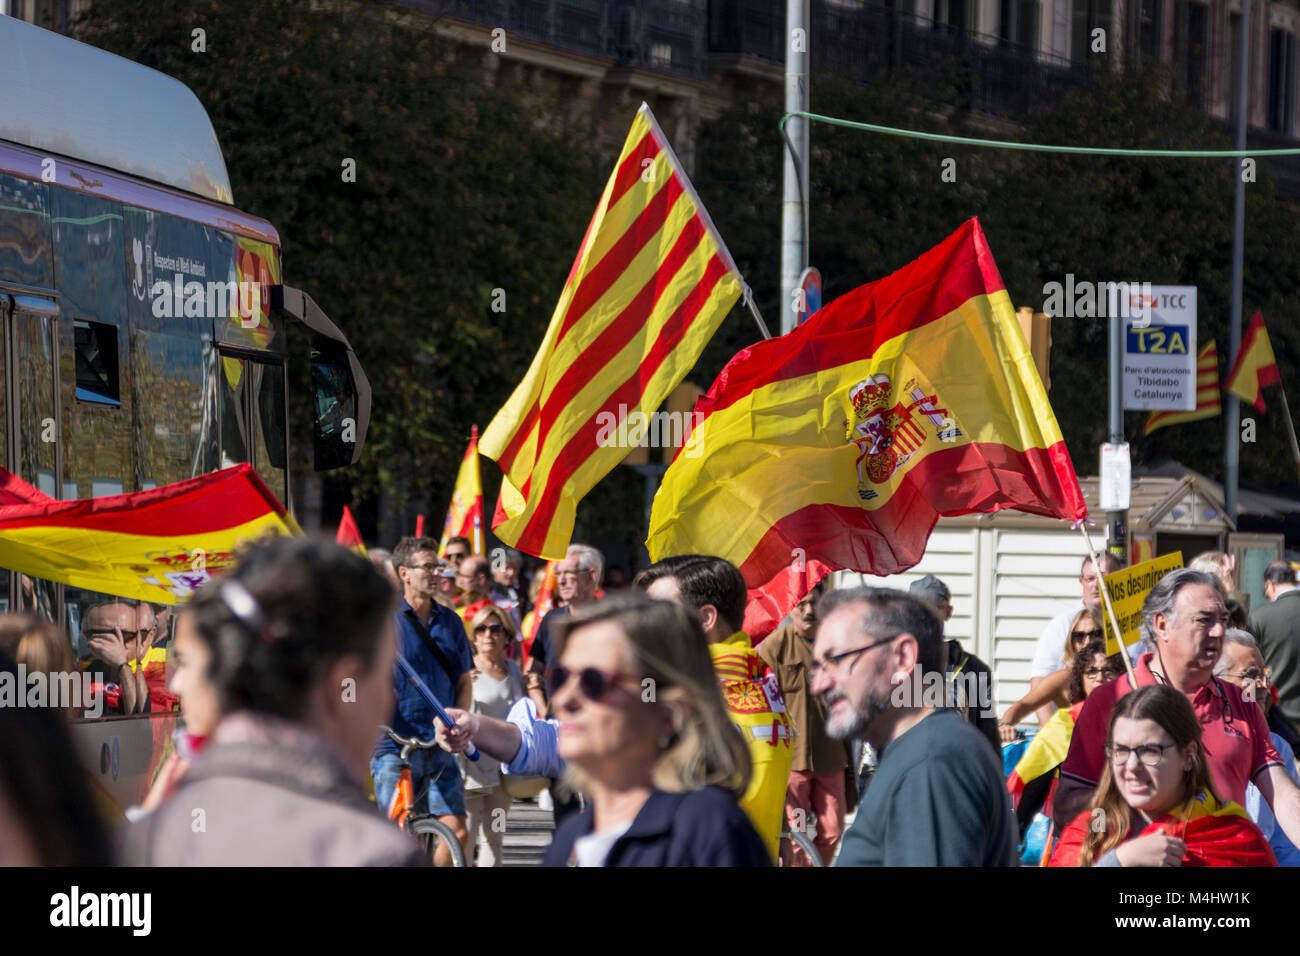 Dimostrazione für den Verbleib Kataloniens in Spanien, gemeinsame Aktion von Katalanen und Spanienanhängern Foto Stock